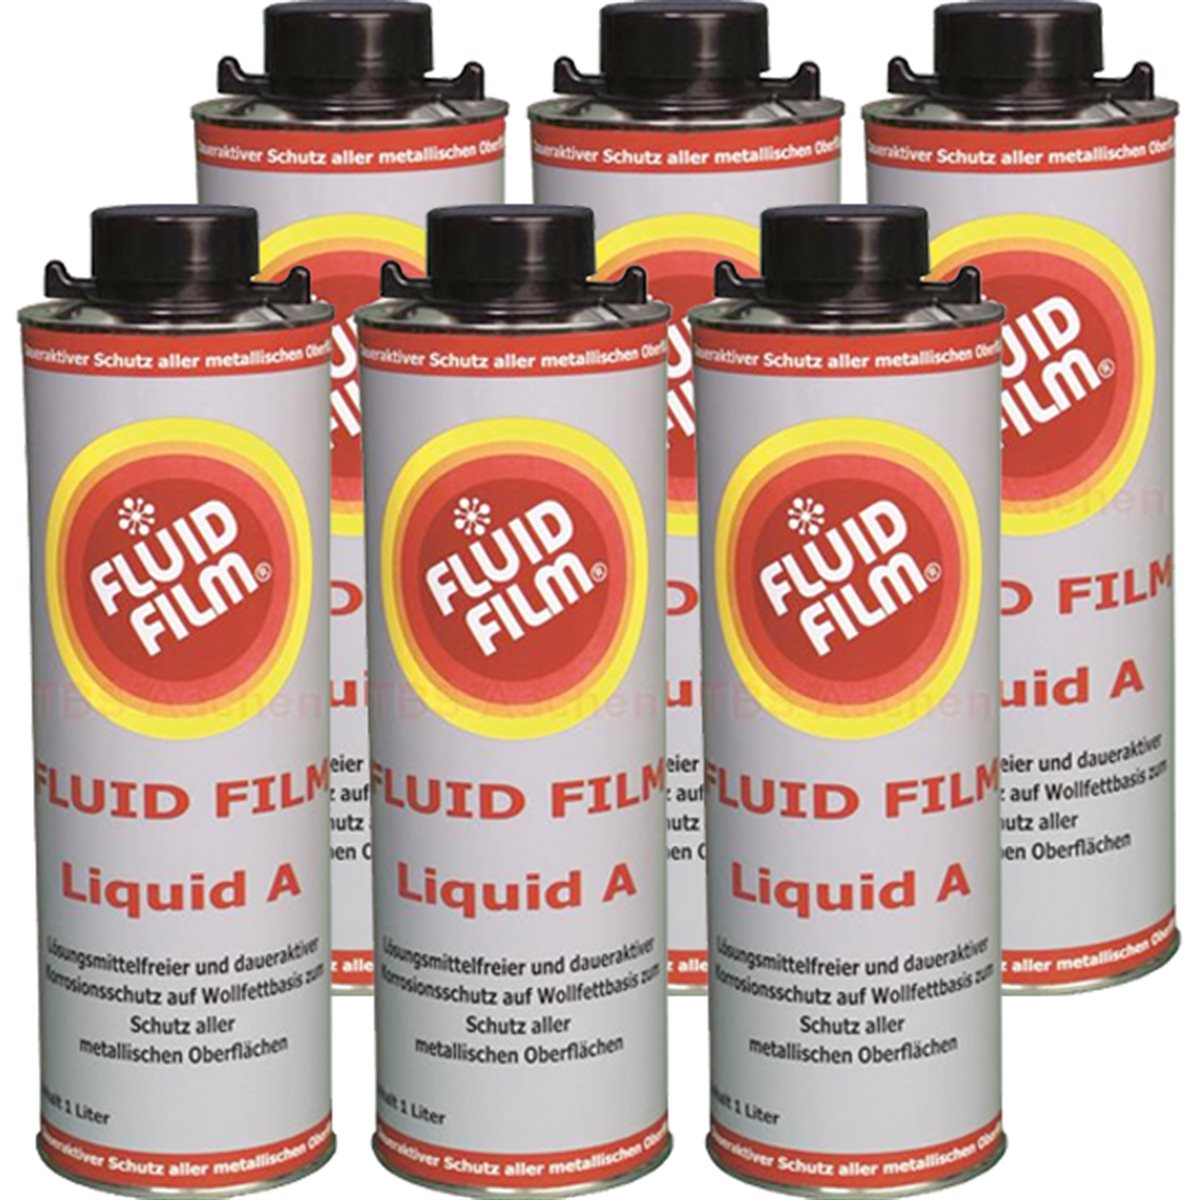 fluid film black vs regular